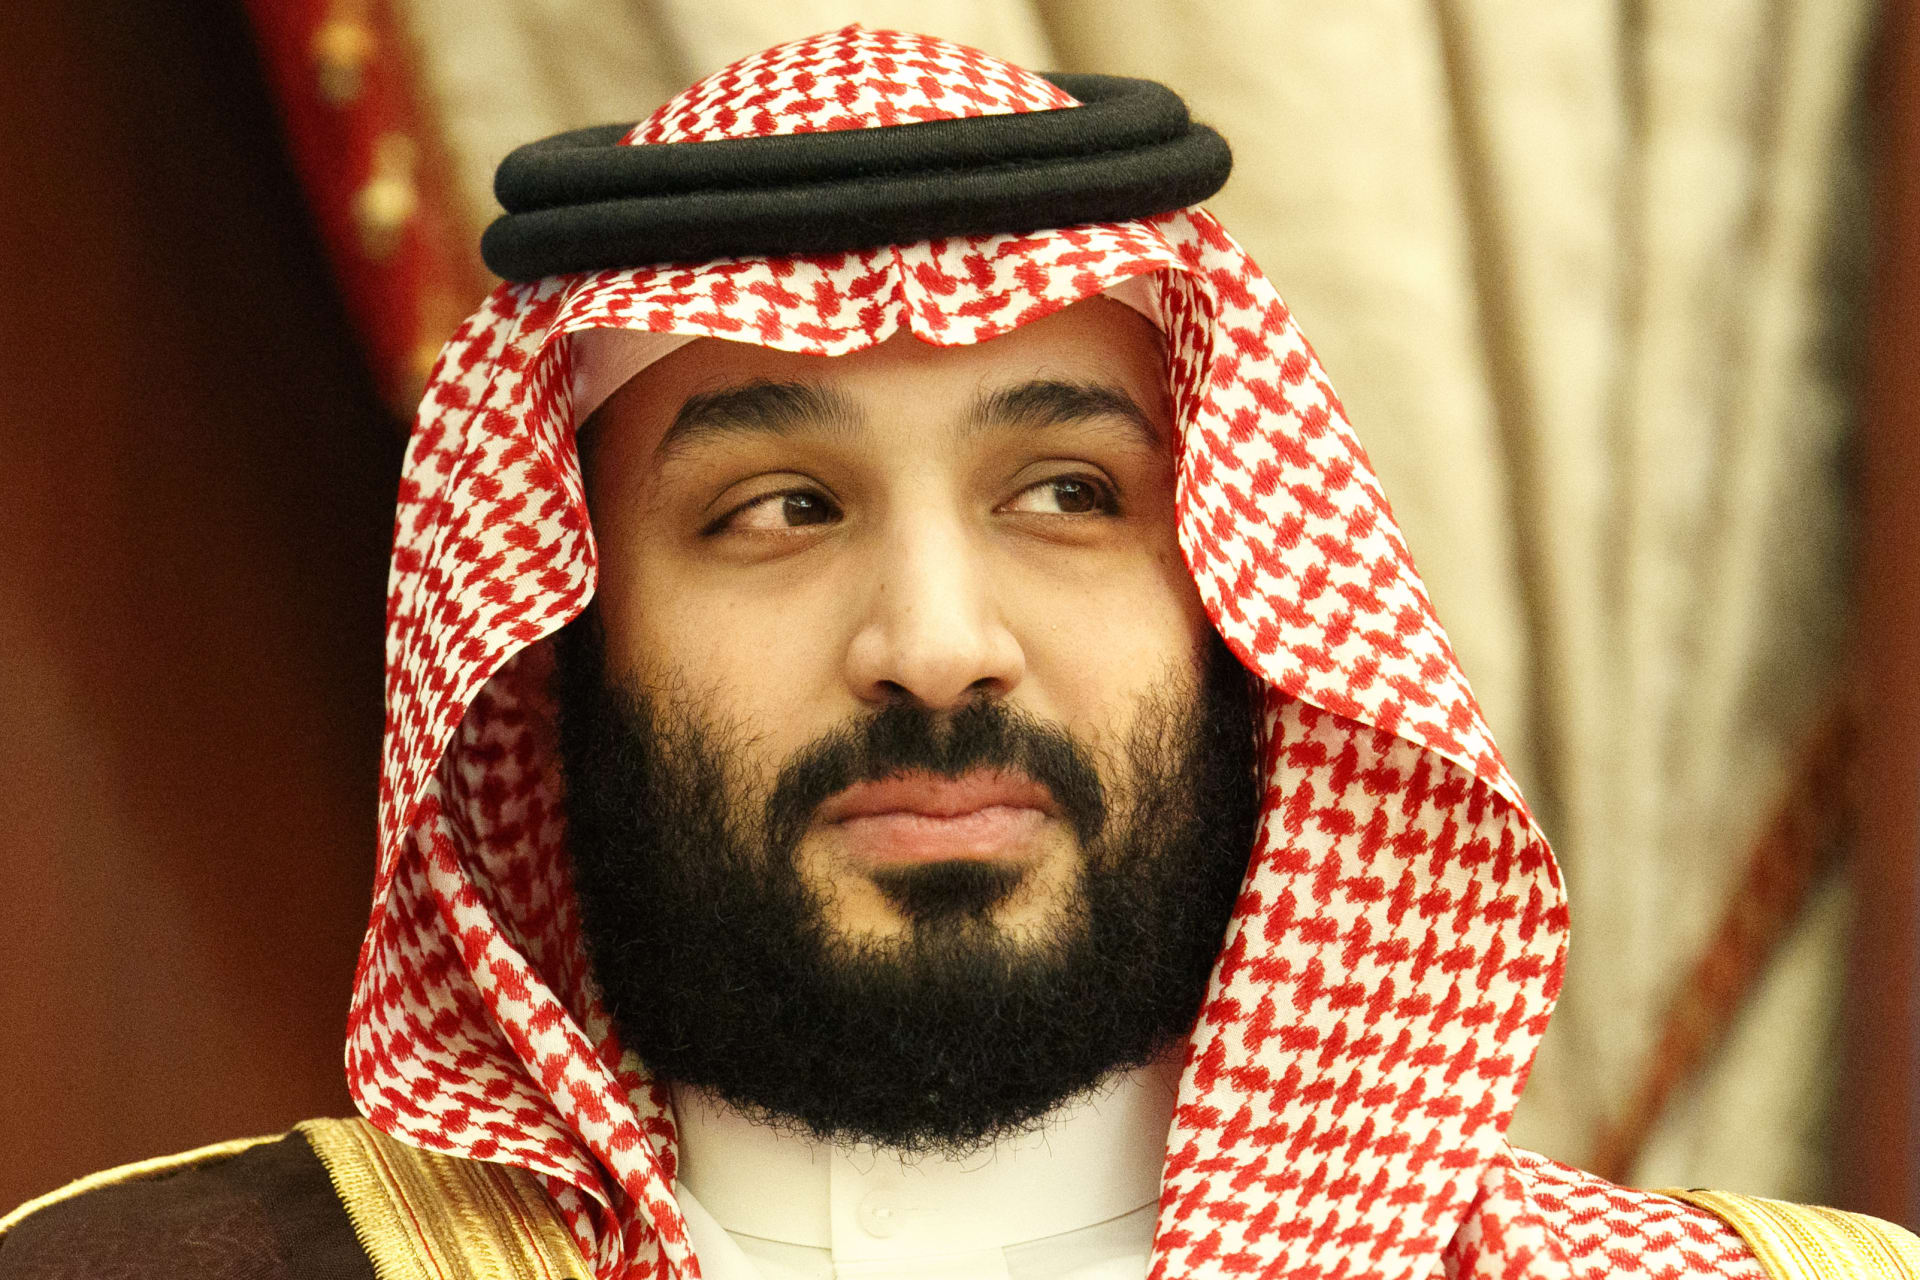 ولي العهد السعودي يكشف حصيلة الفساد.. ويعلن القضاء على التطرف "خلال سنة واحدة"